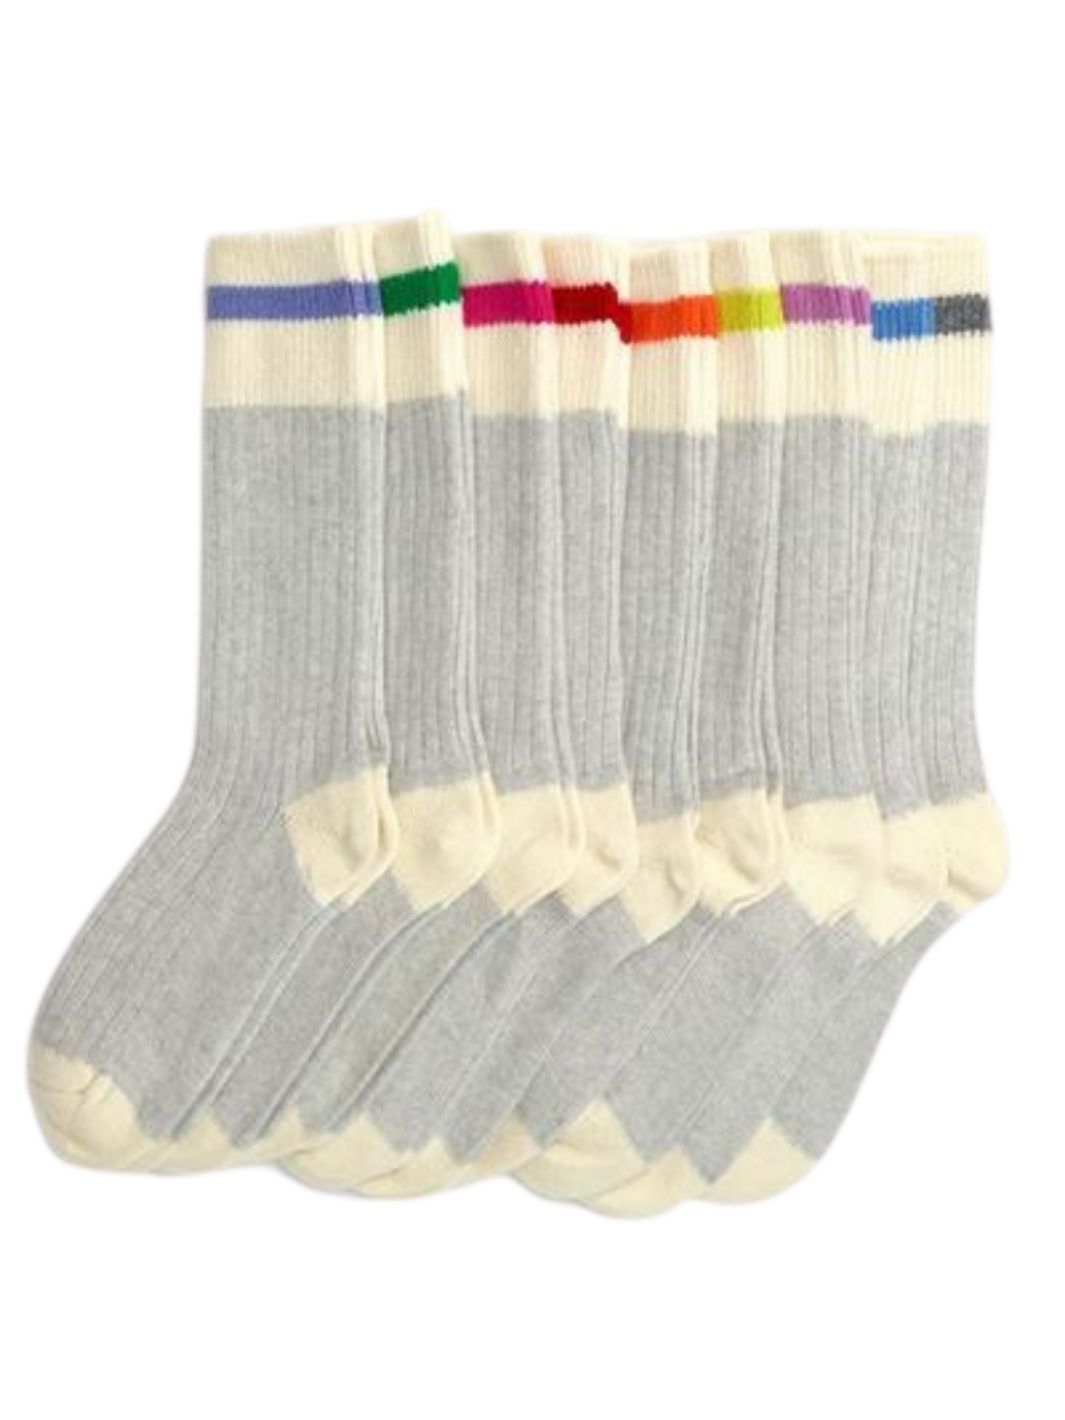 Ensemble de chaussettes en laine merino grises et blanches avec ligne de différentes couleurs